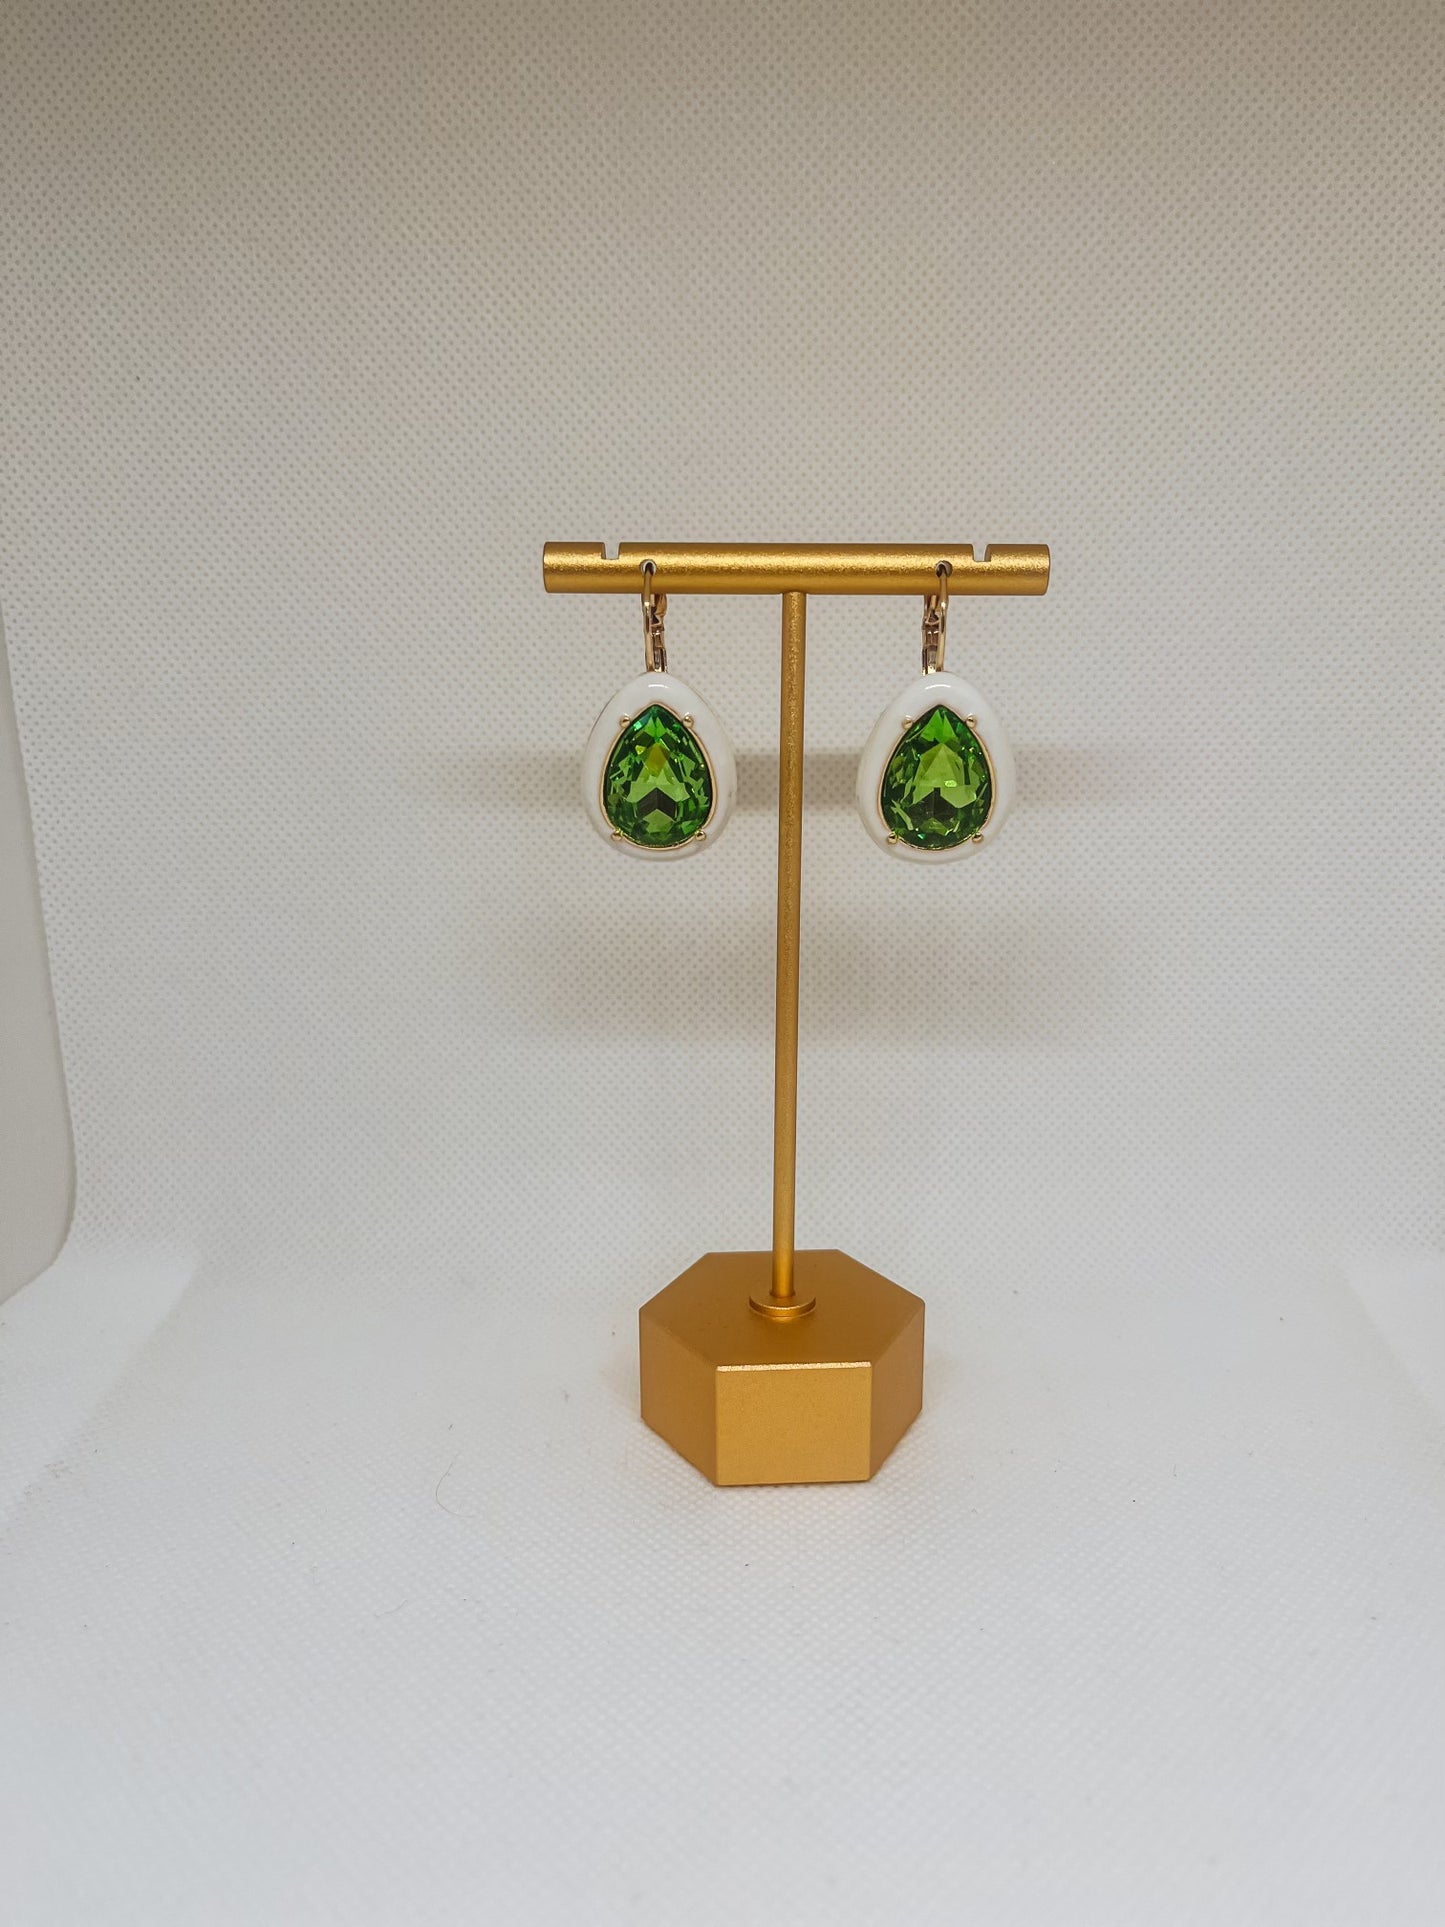 Green Teardrop Earrings